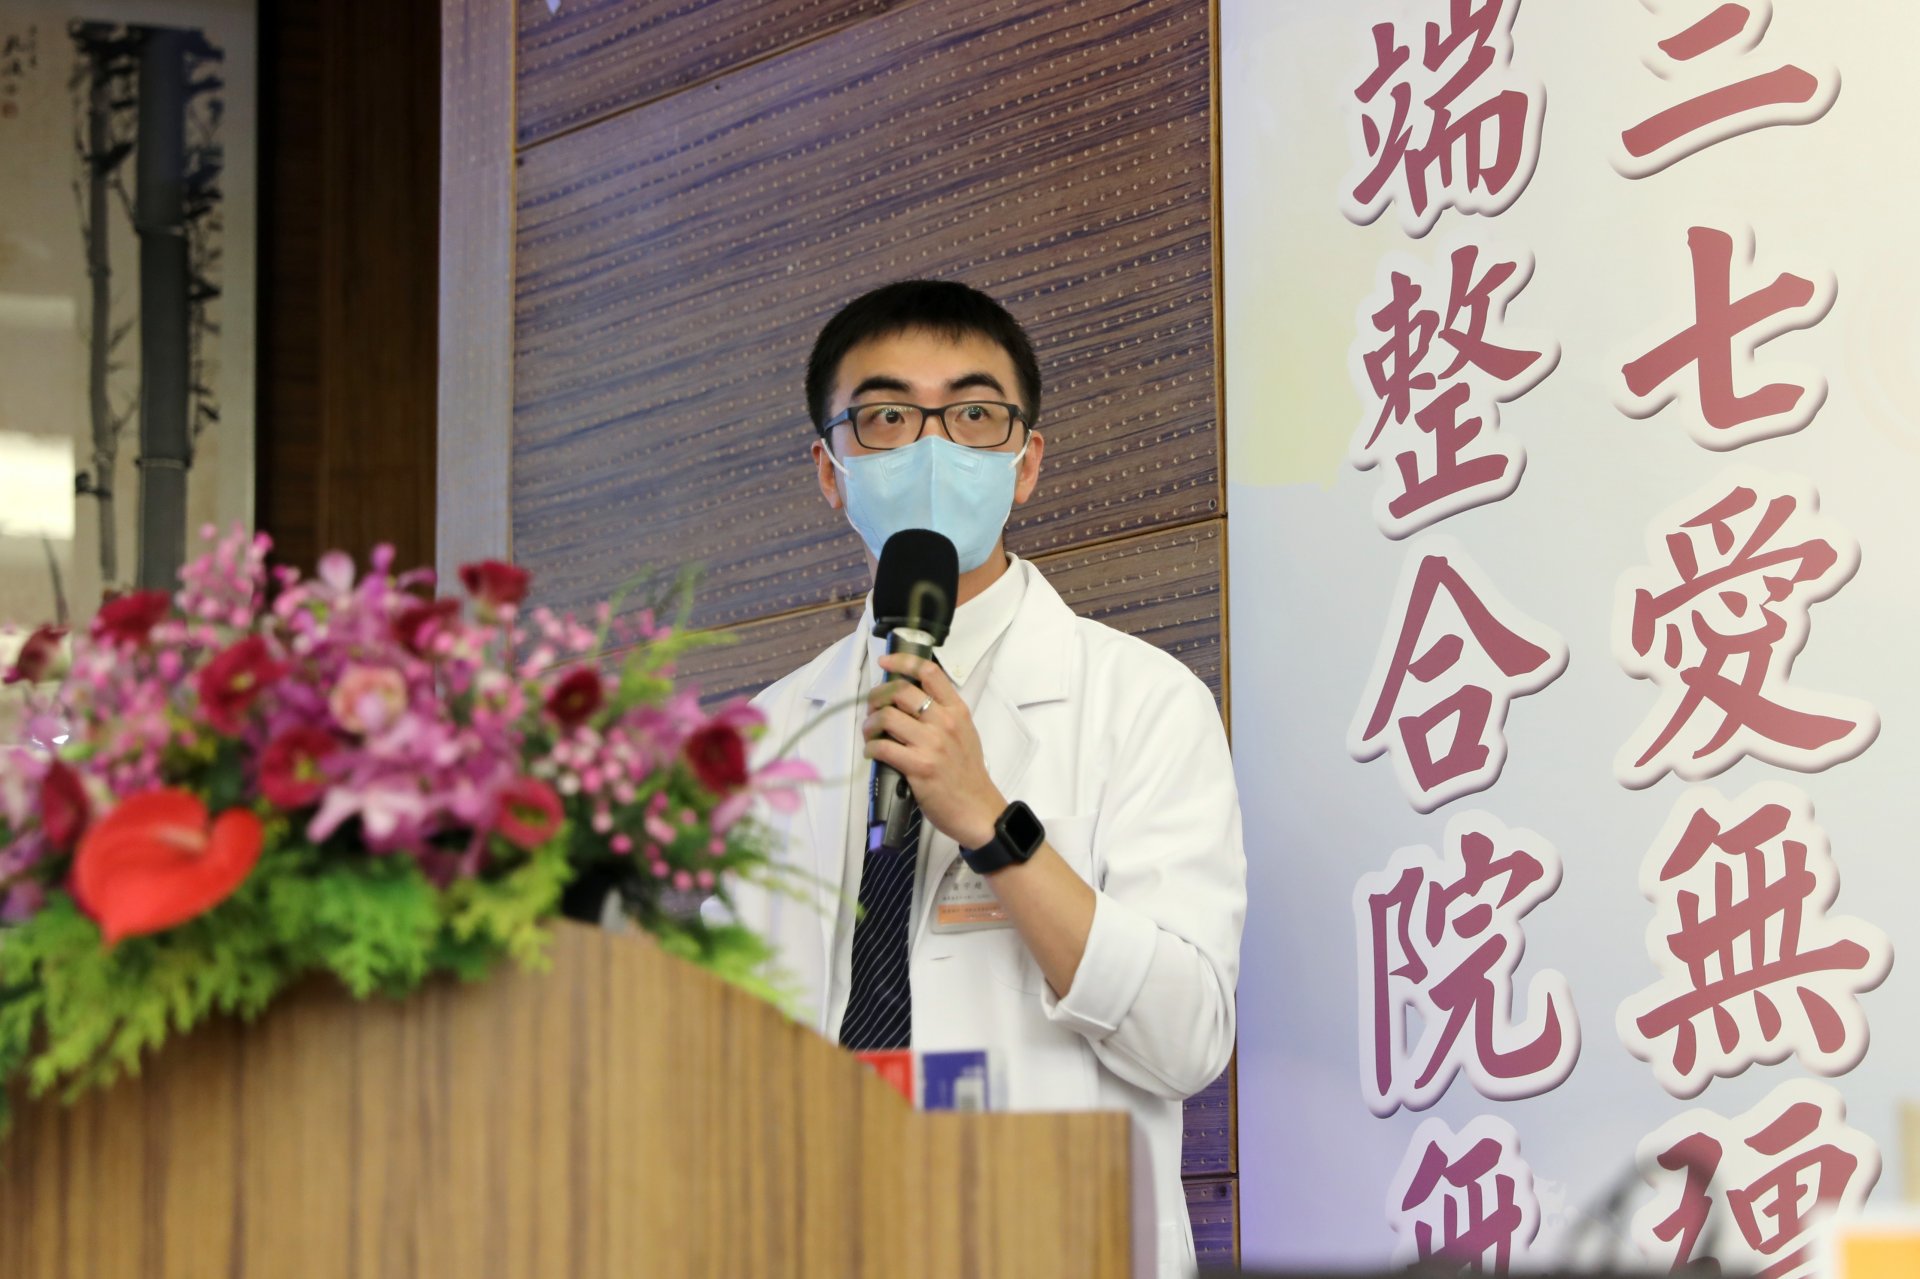 小兒部蕭宇超醫師介紹副食品的主要功能，是要幫助寶寶銜接大人食物，脫離對奶的依賴，並降低對食物的過敏機率。